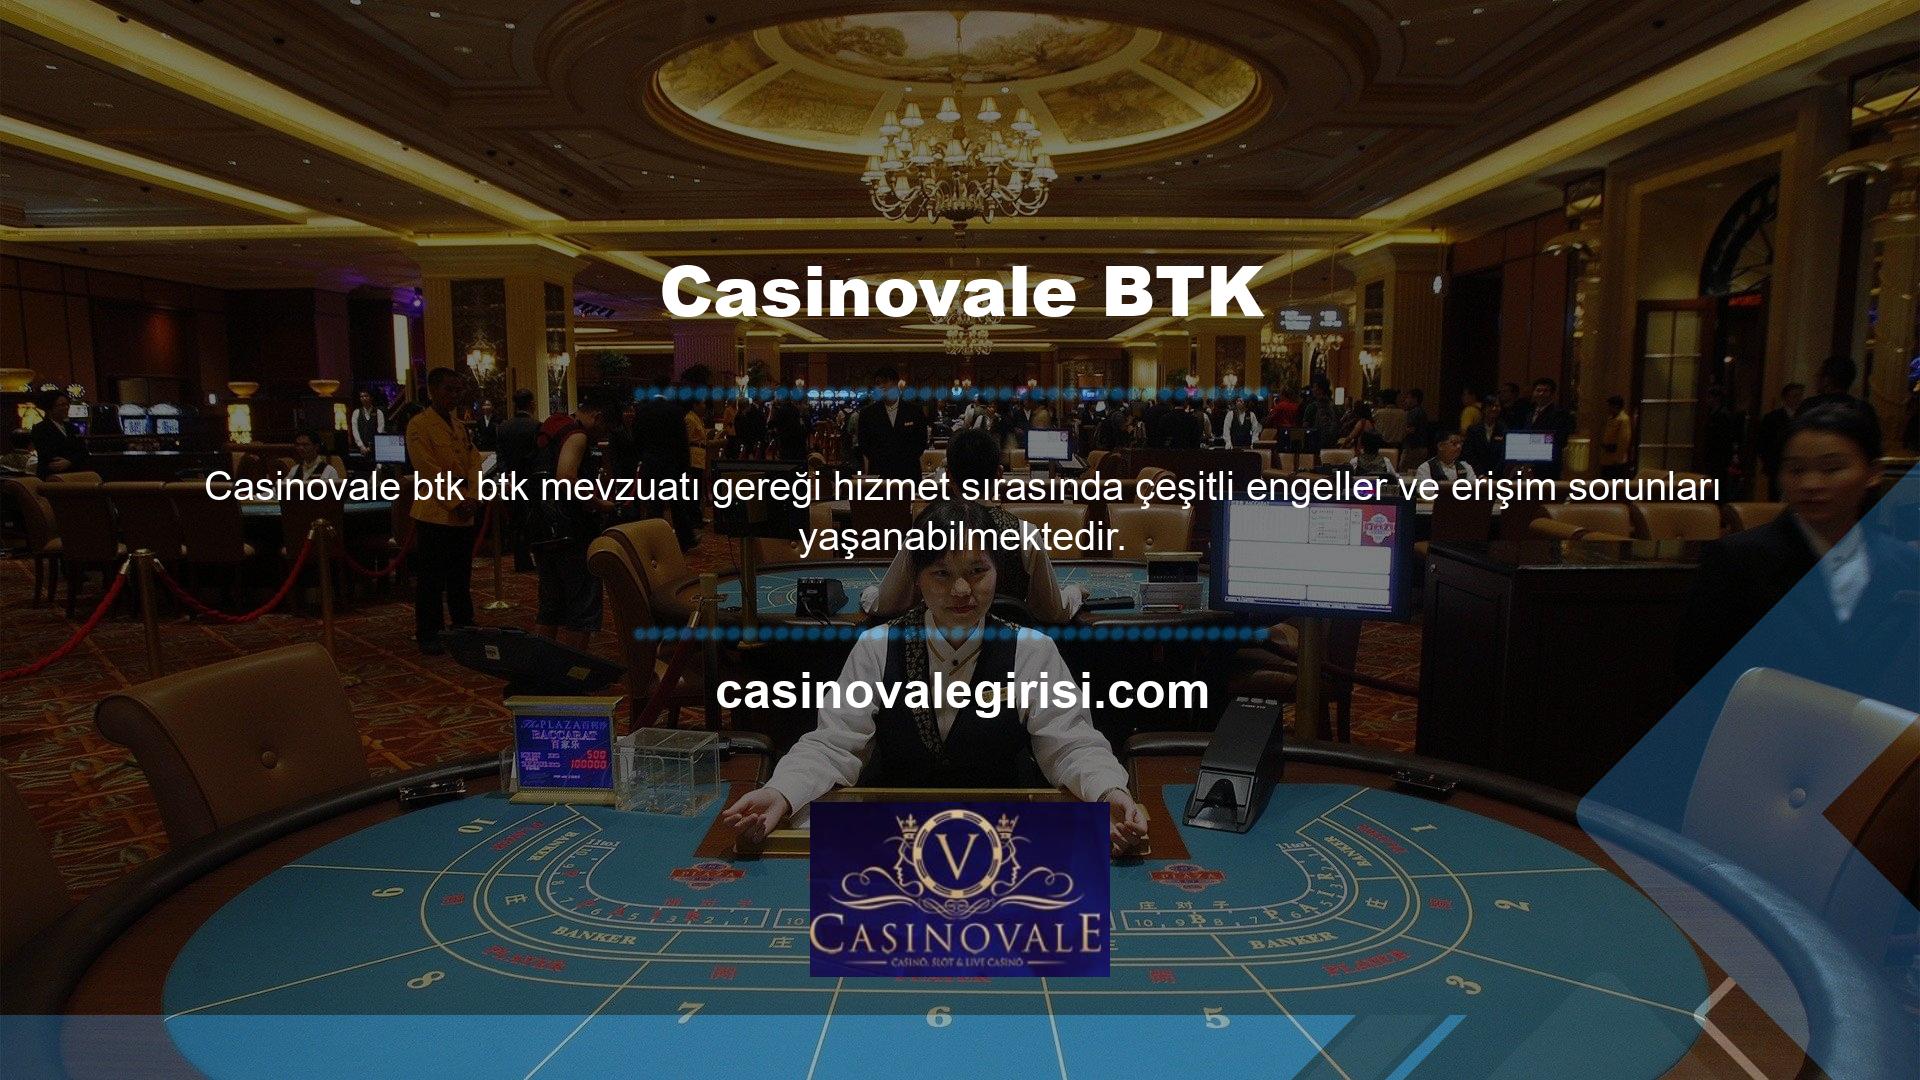 Bu sorunları çözmek için Casinovale giriş adresleri sürekli güncellenmekte ve farklı numaralarla eklenmektedir